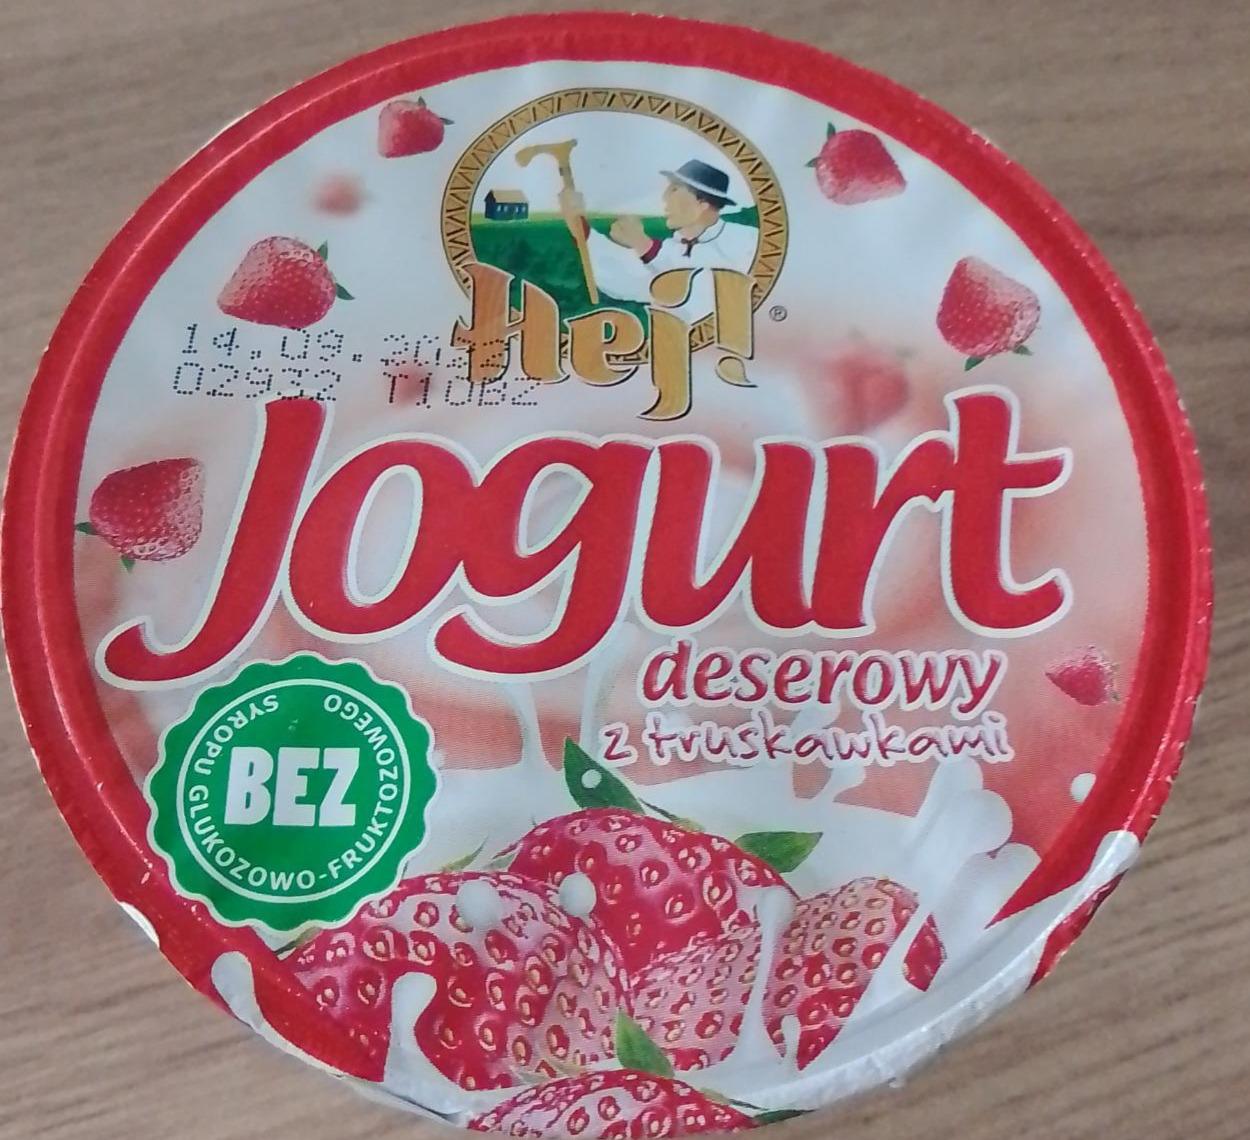 Zdjęcia - Jjogurt deserowy z truskawkami Hej!